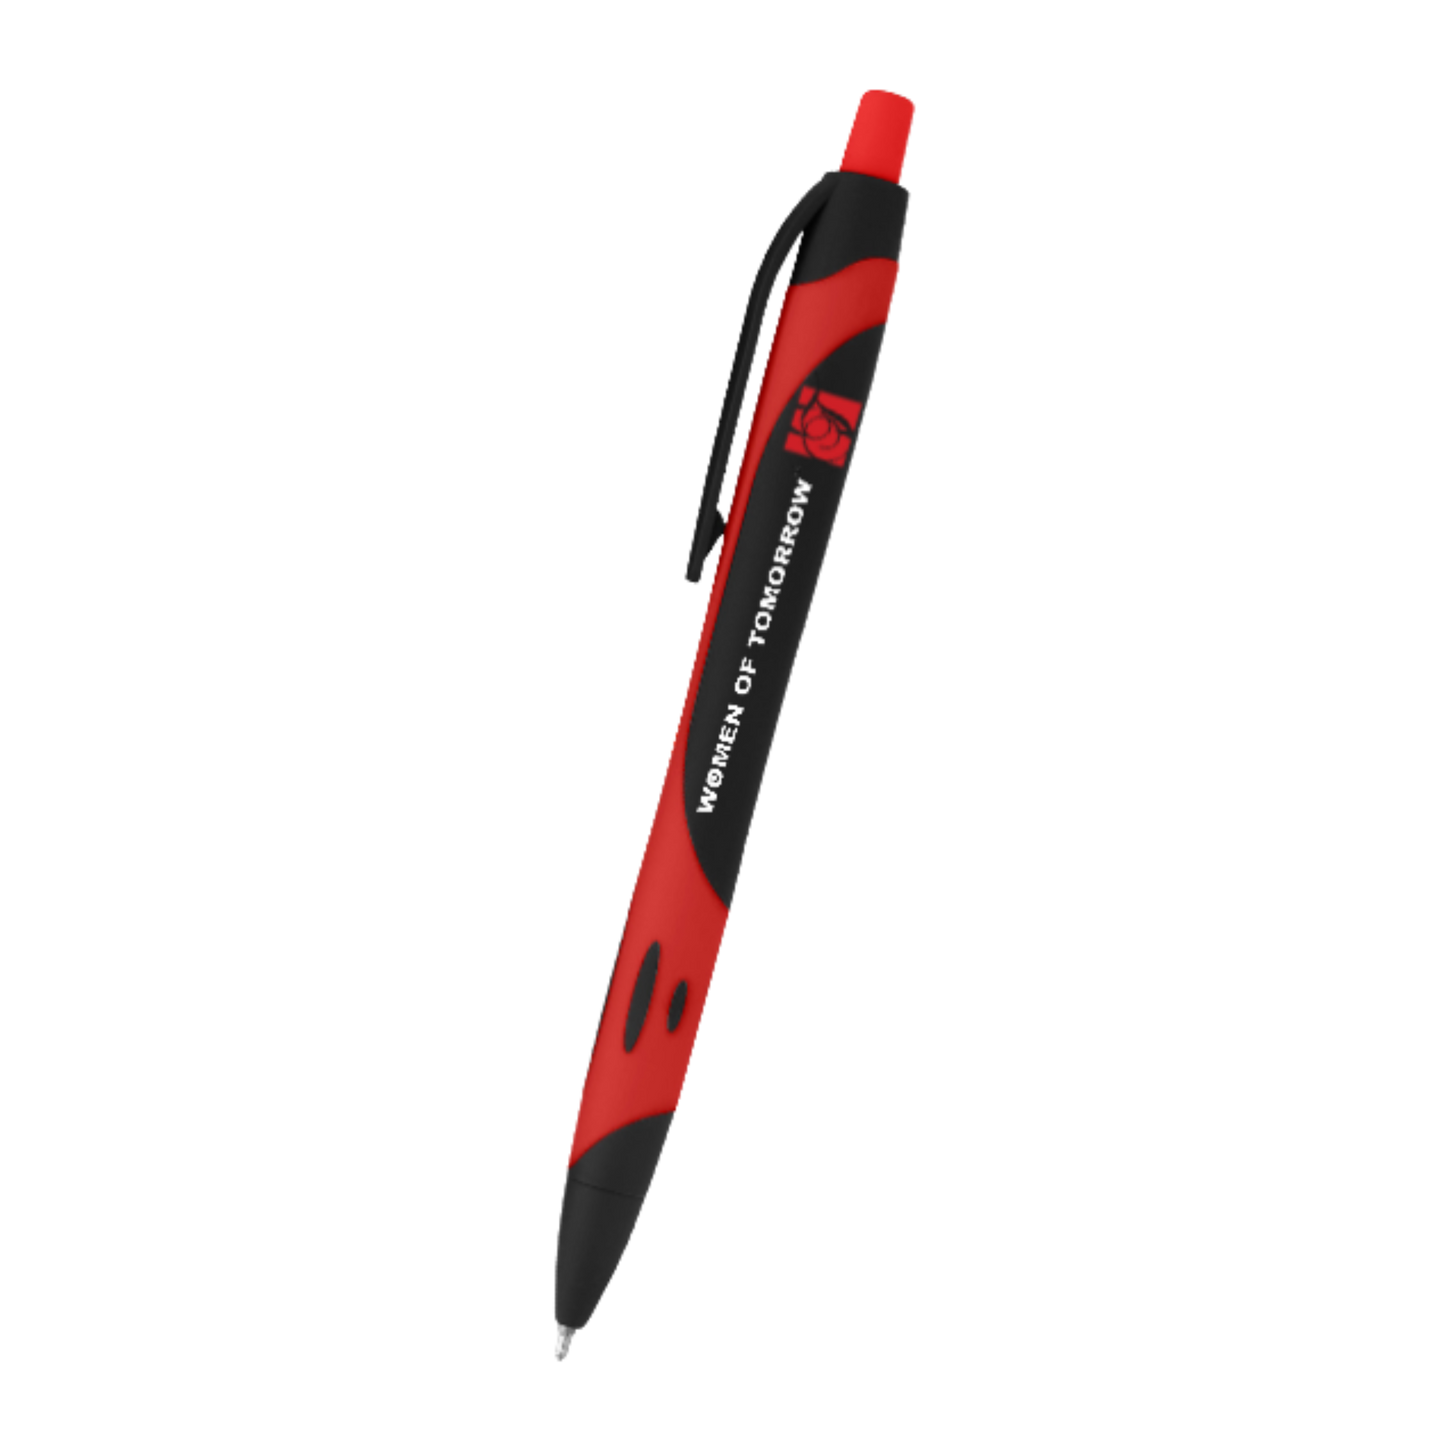 Two-tone Sleek Write Rubberized Pen